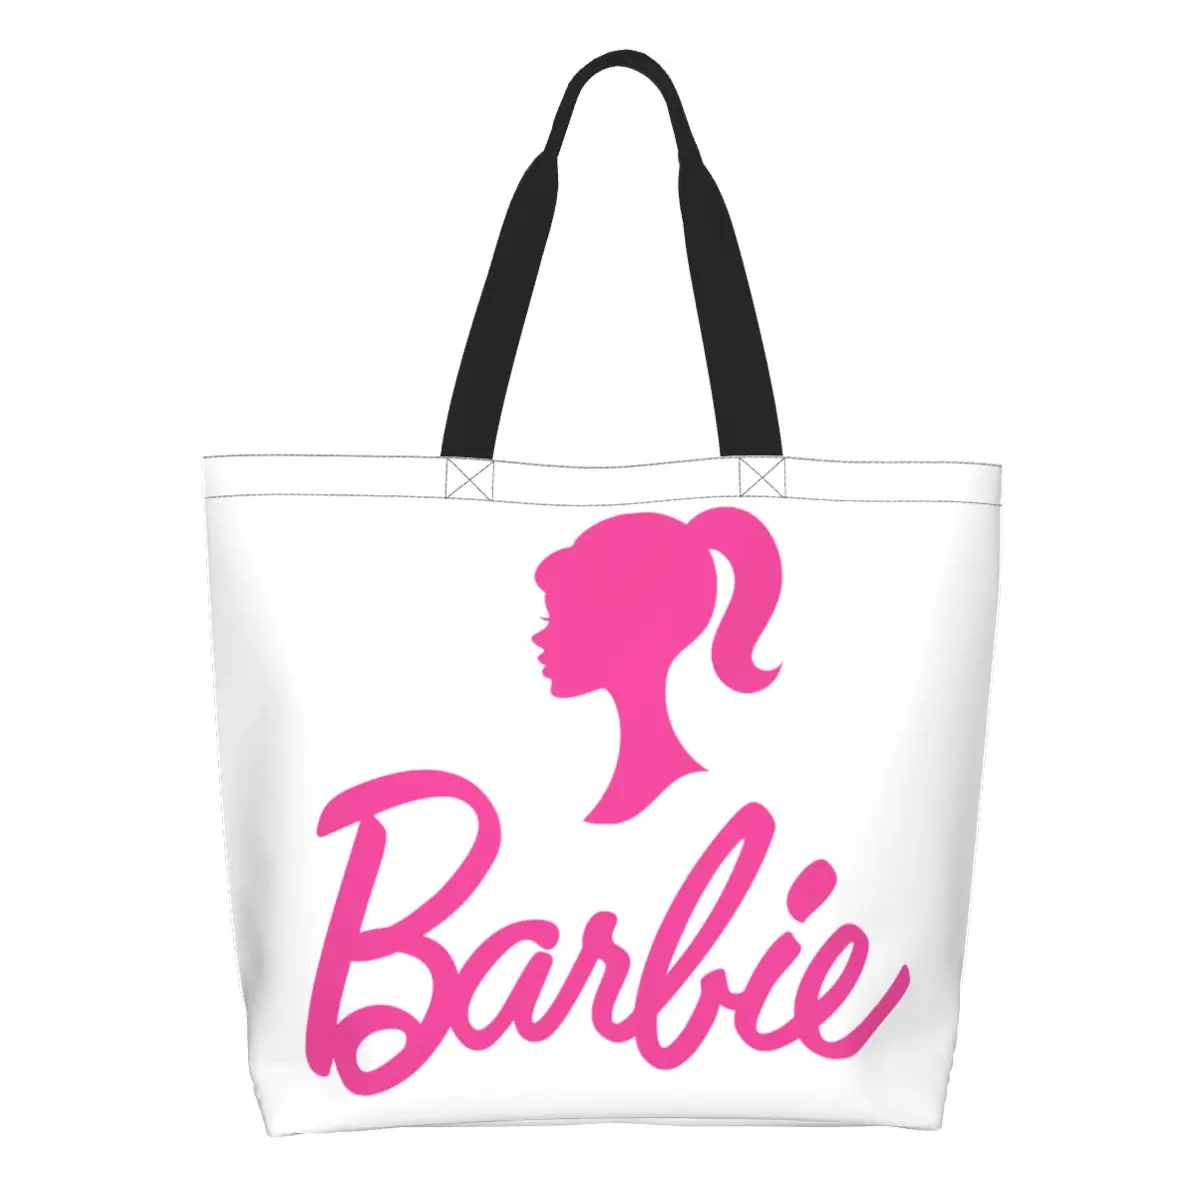 Продуктовая сумка с логотипом Barbie большой емкости Ulzzang Stuff для стильной сумки через плечо в стиле унисекс